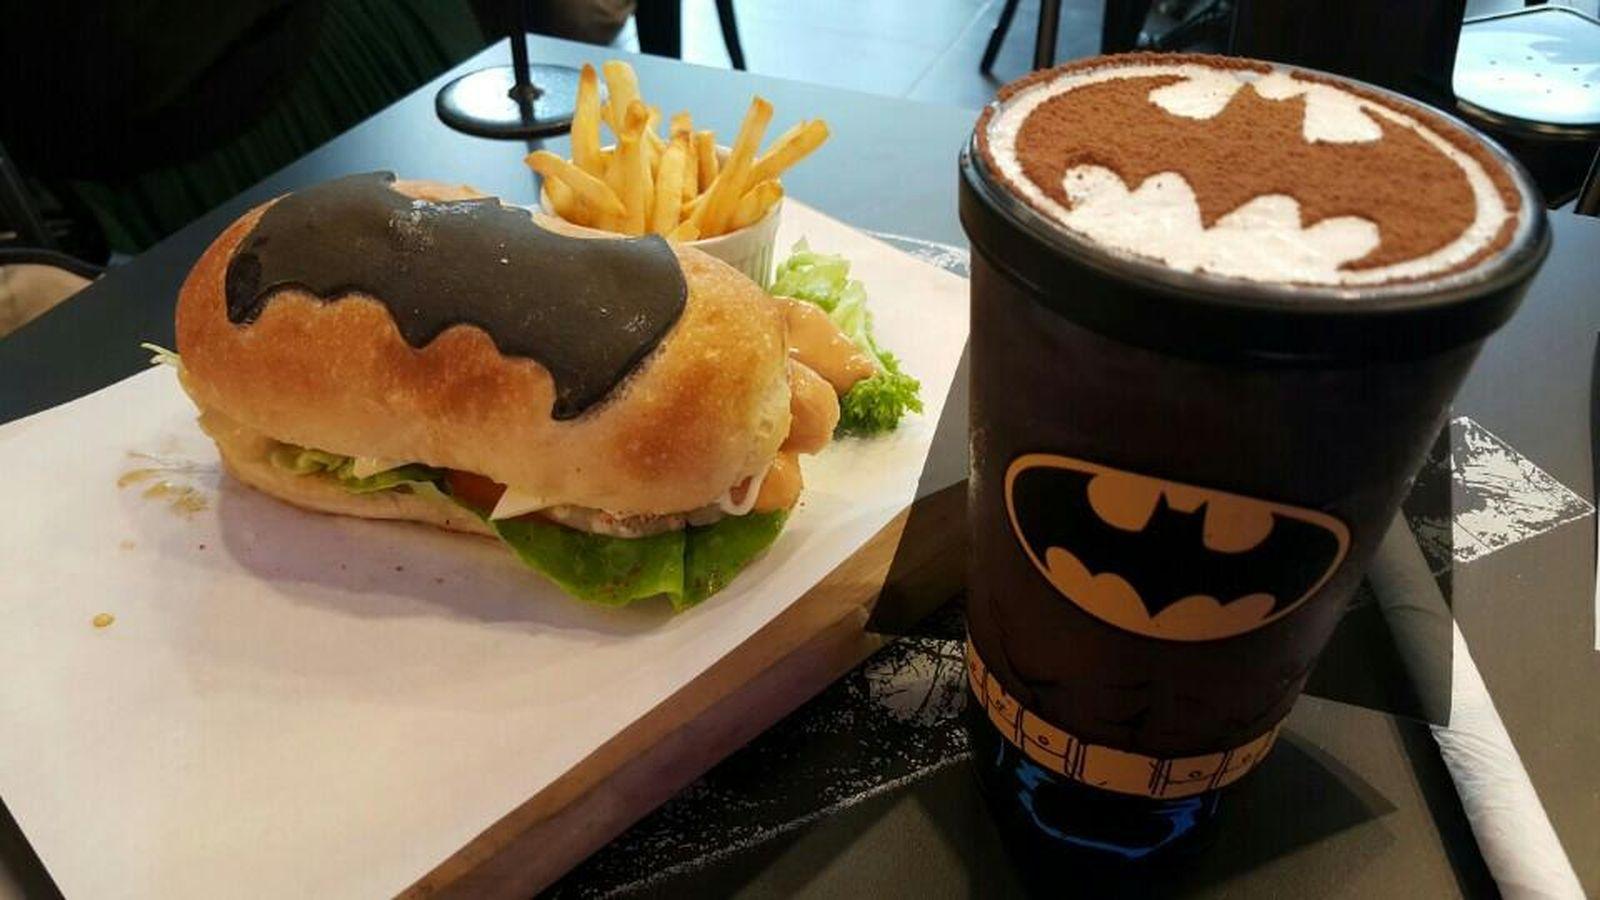 Lanchonete inspirada em heróis serve bat-sinal no seu café